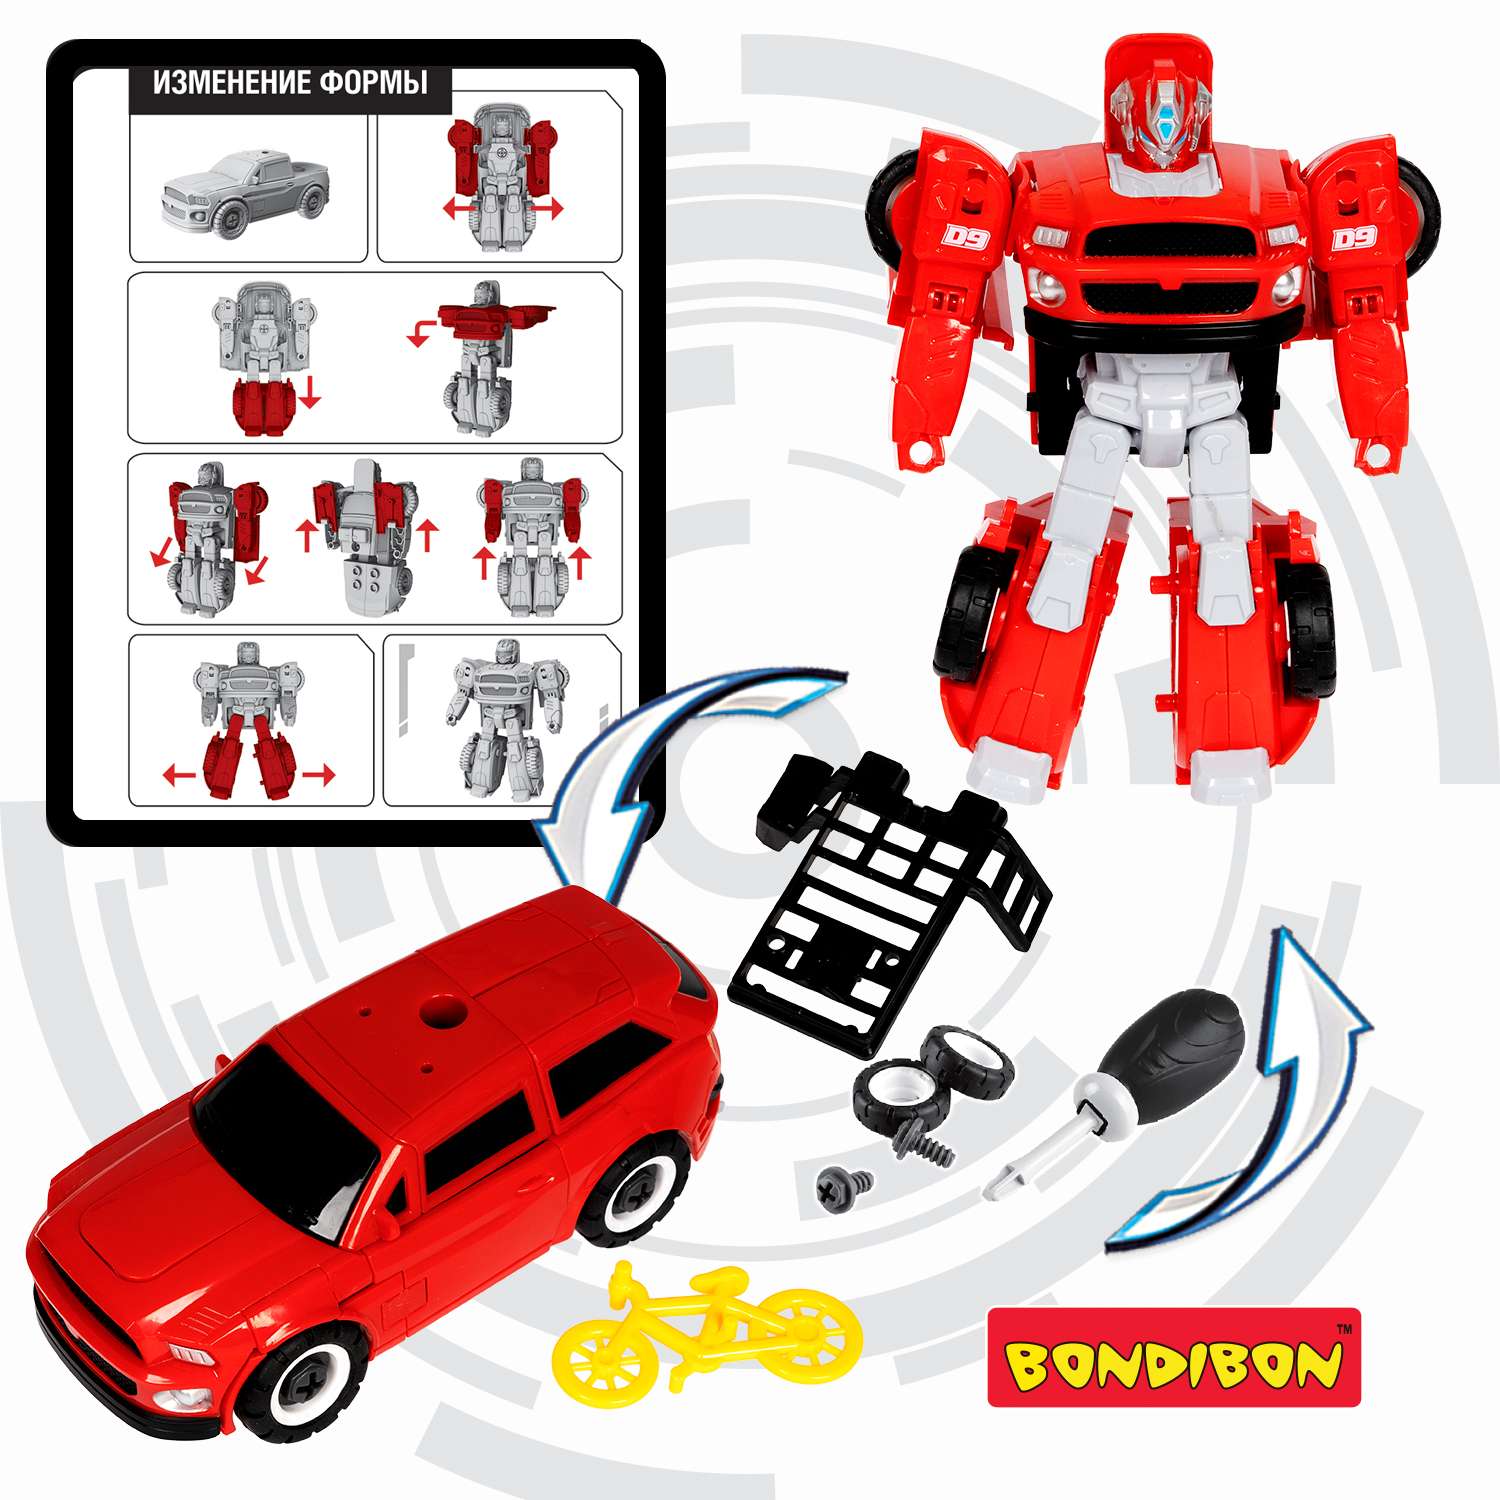 Трансформер BONDIBON Bondibot робот-автомобиль с отвёрткой 2 в 1 джип с велосипедом красного цвета - фото 6